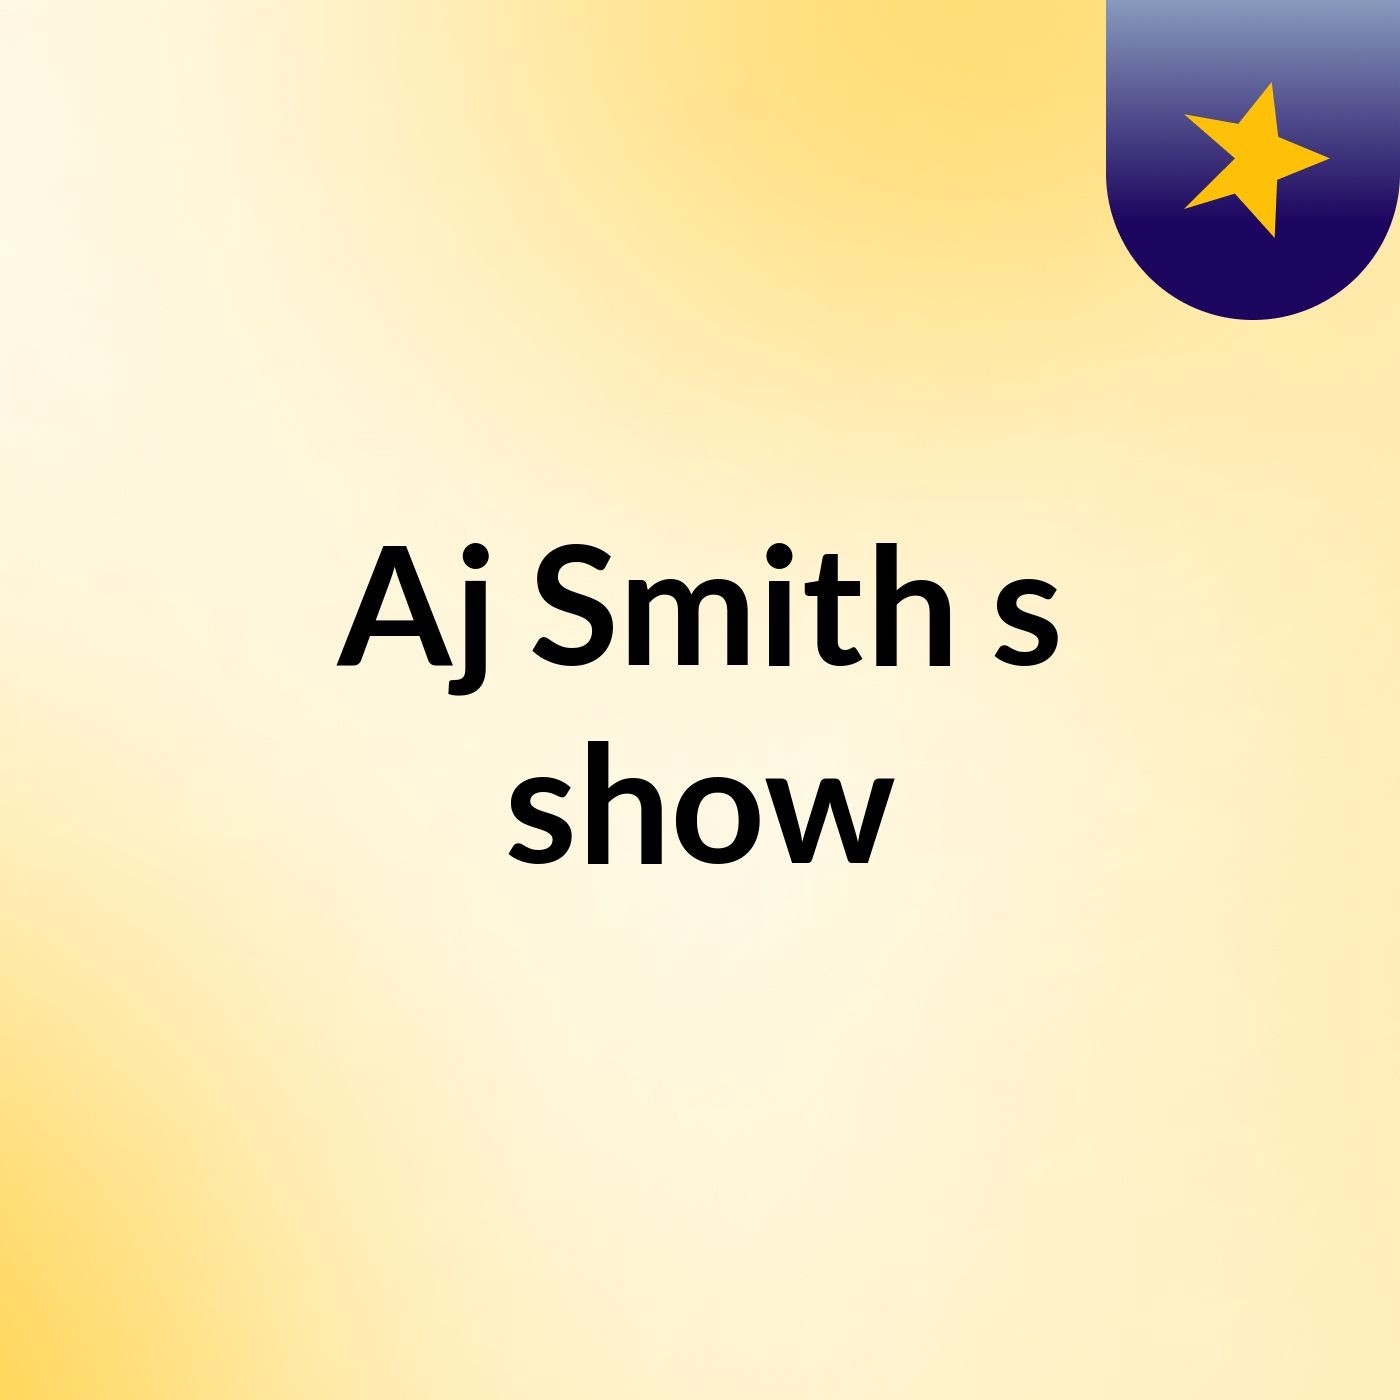 Episode 11 - Aj Smith's show